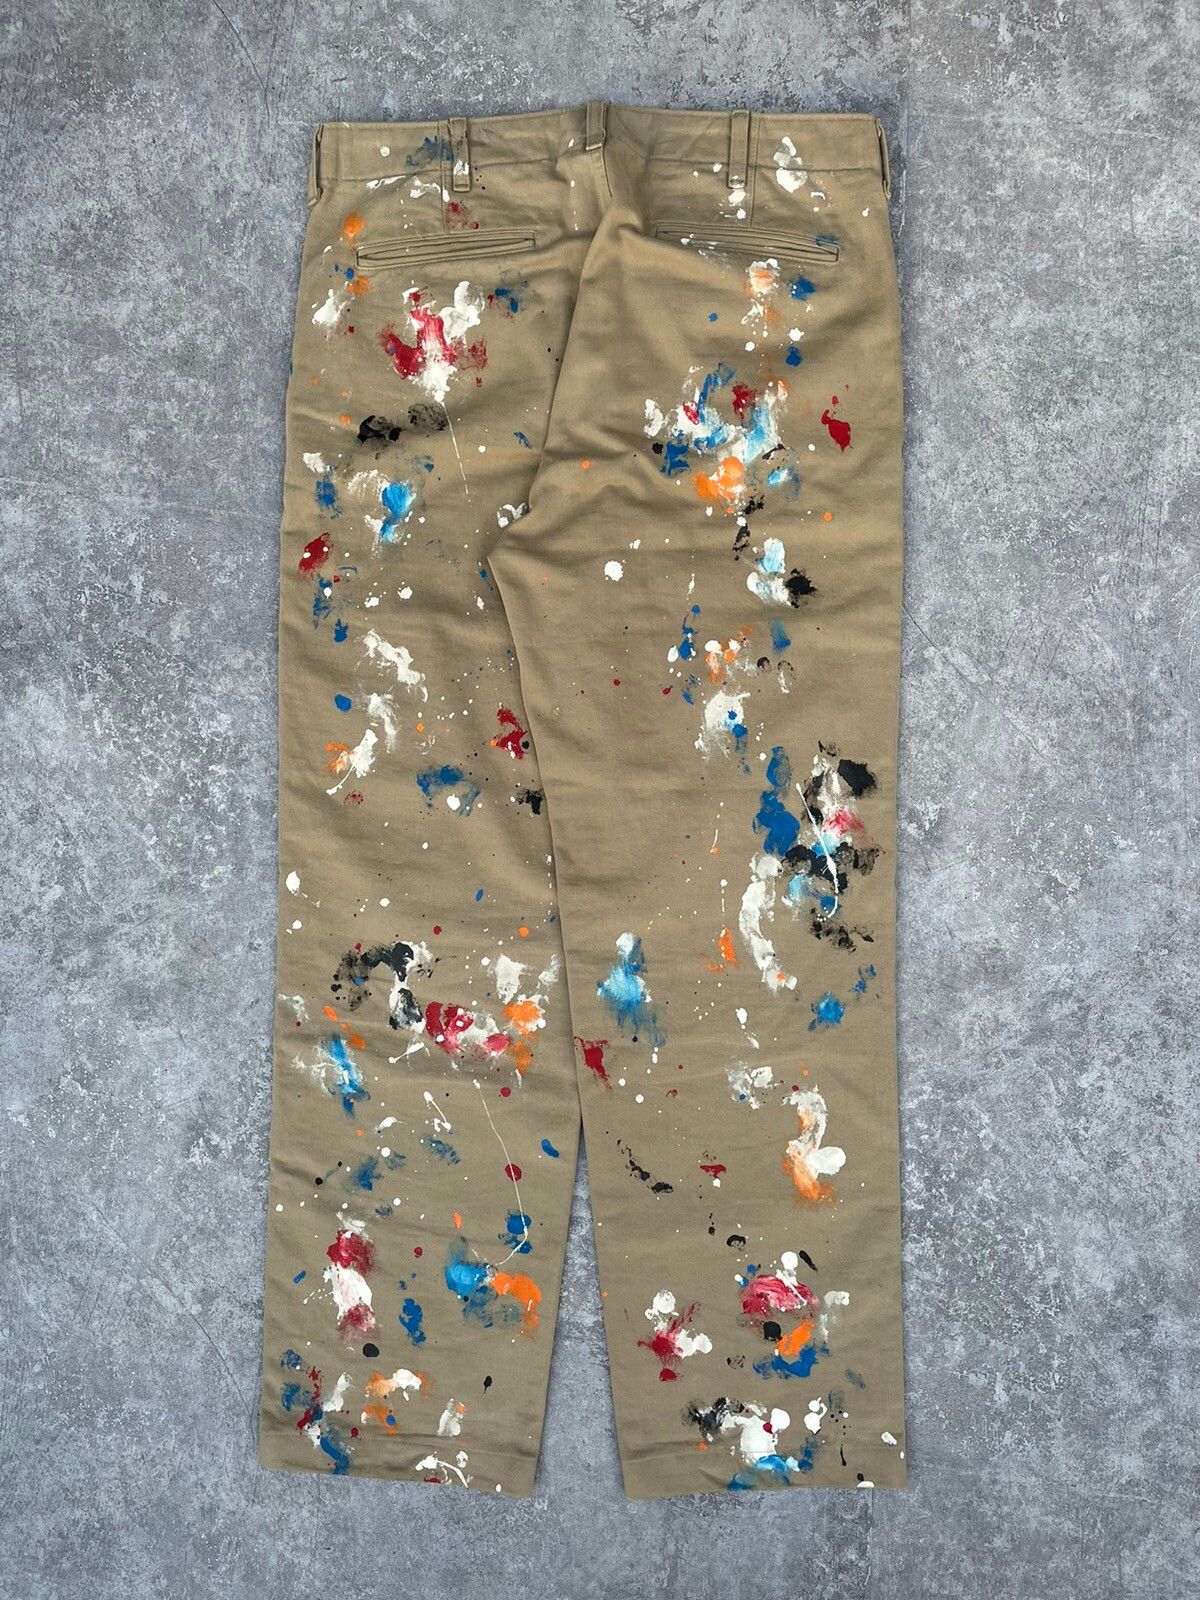 Comme des Garcons AD2011 Painted Splatter Pants Size US 34 / EU 50 - 2 Preview